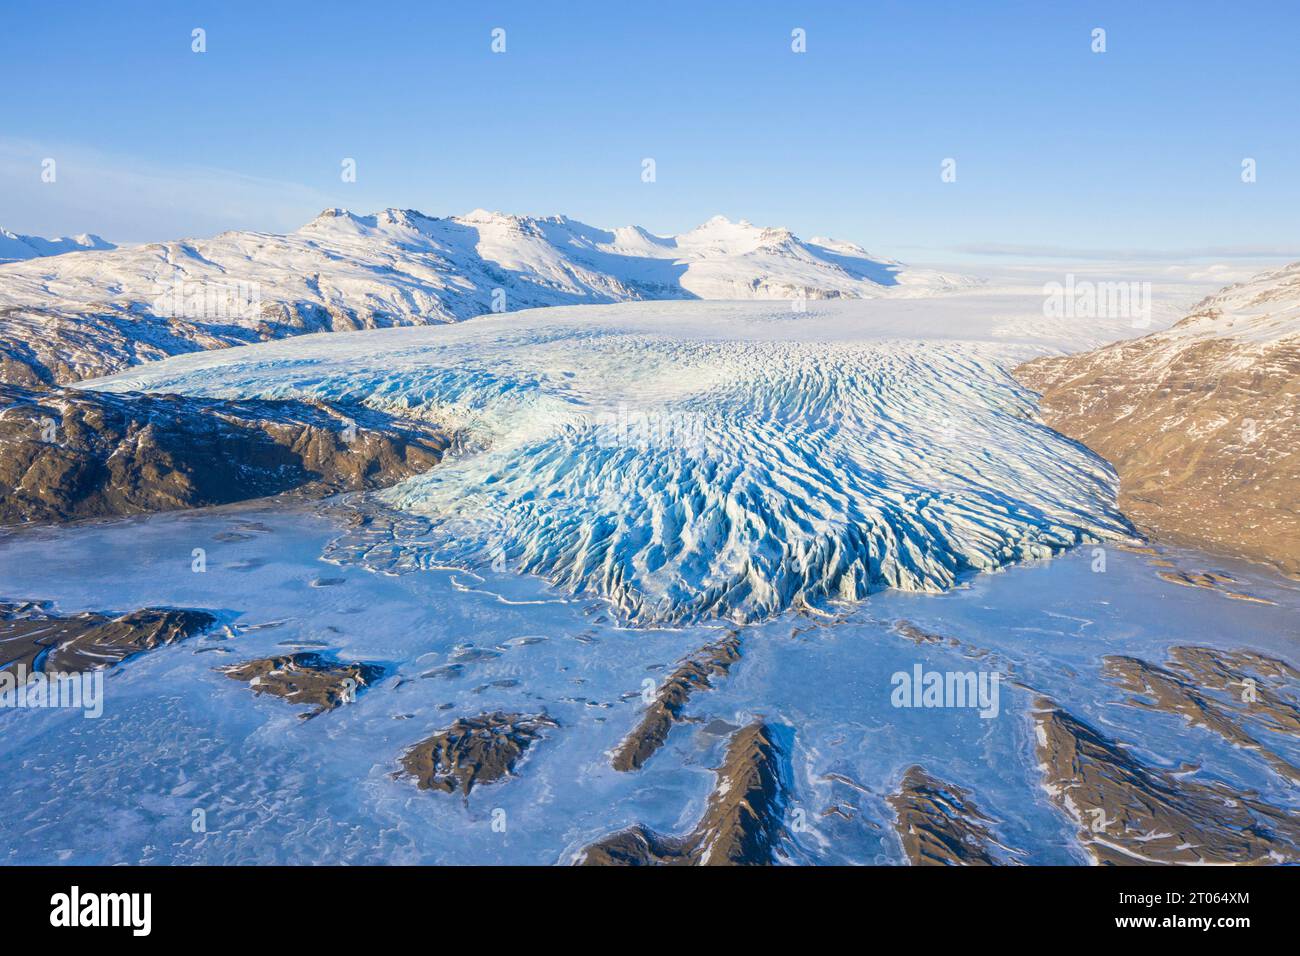 Vista aerea sulla lingua ghiacciata Falljökull in inverno, uno dei numerosi ghiacciai di sbocco del ghiacciaio Vatnajökull / Vatna, la più grande calotta glaciale dell'Islanda, Austurland Foto Stock